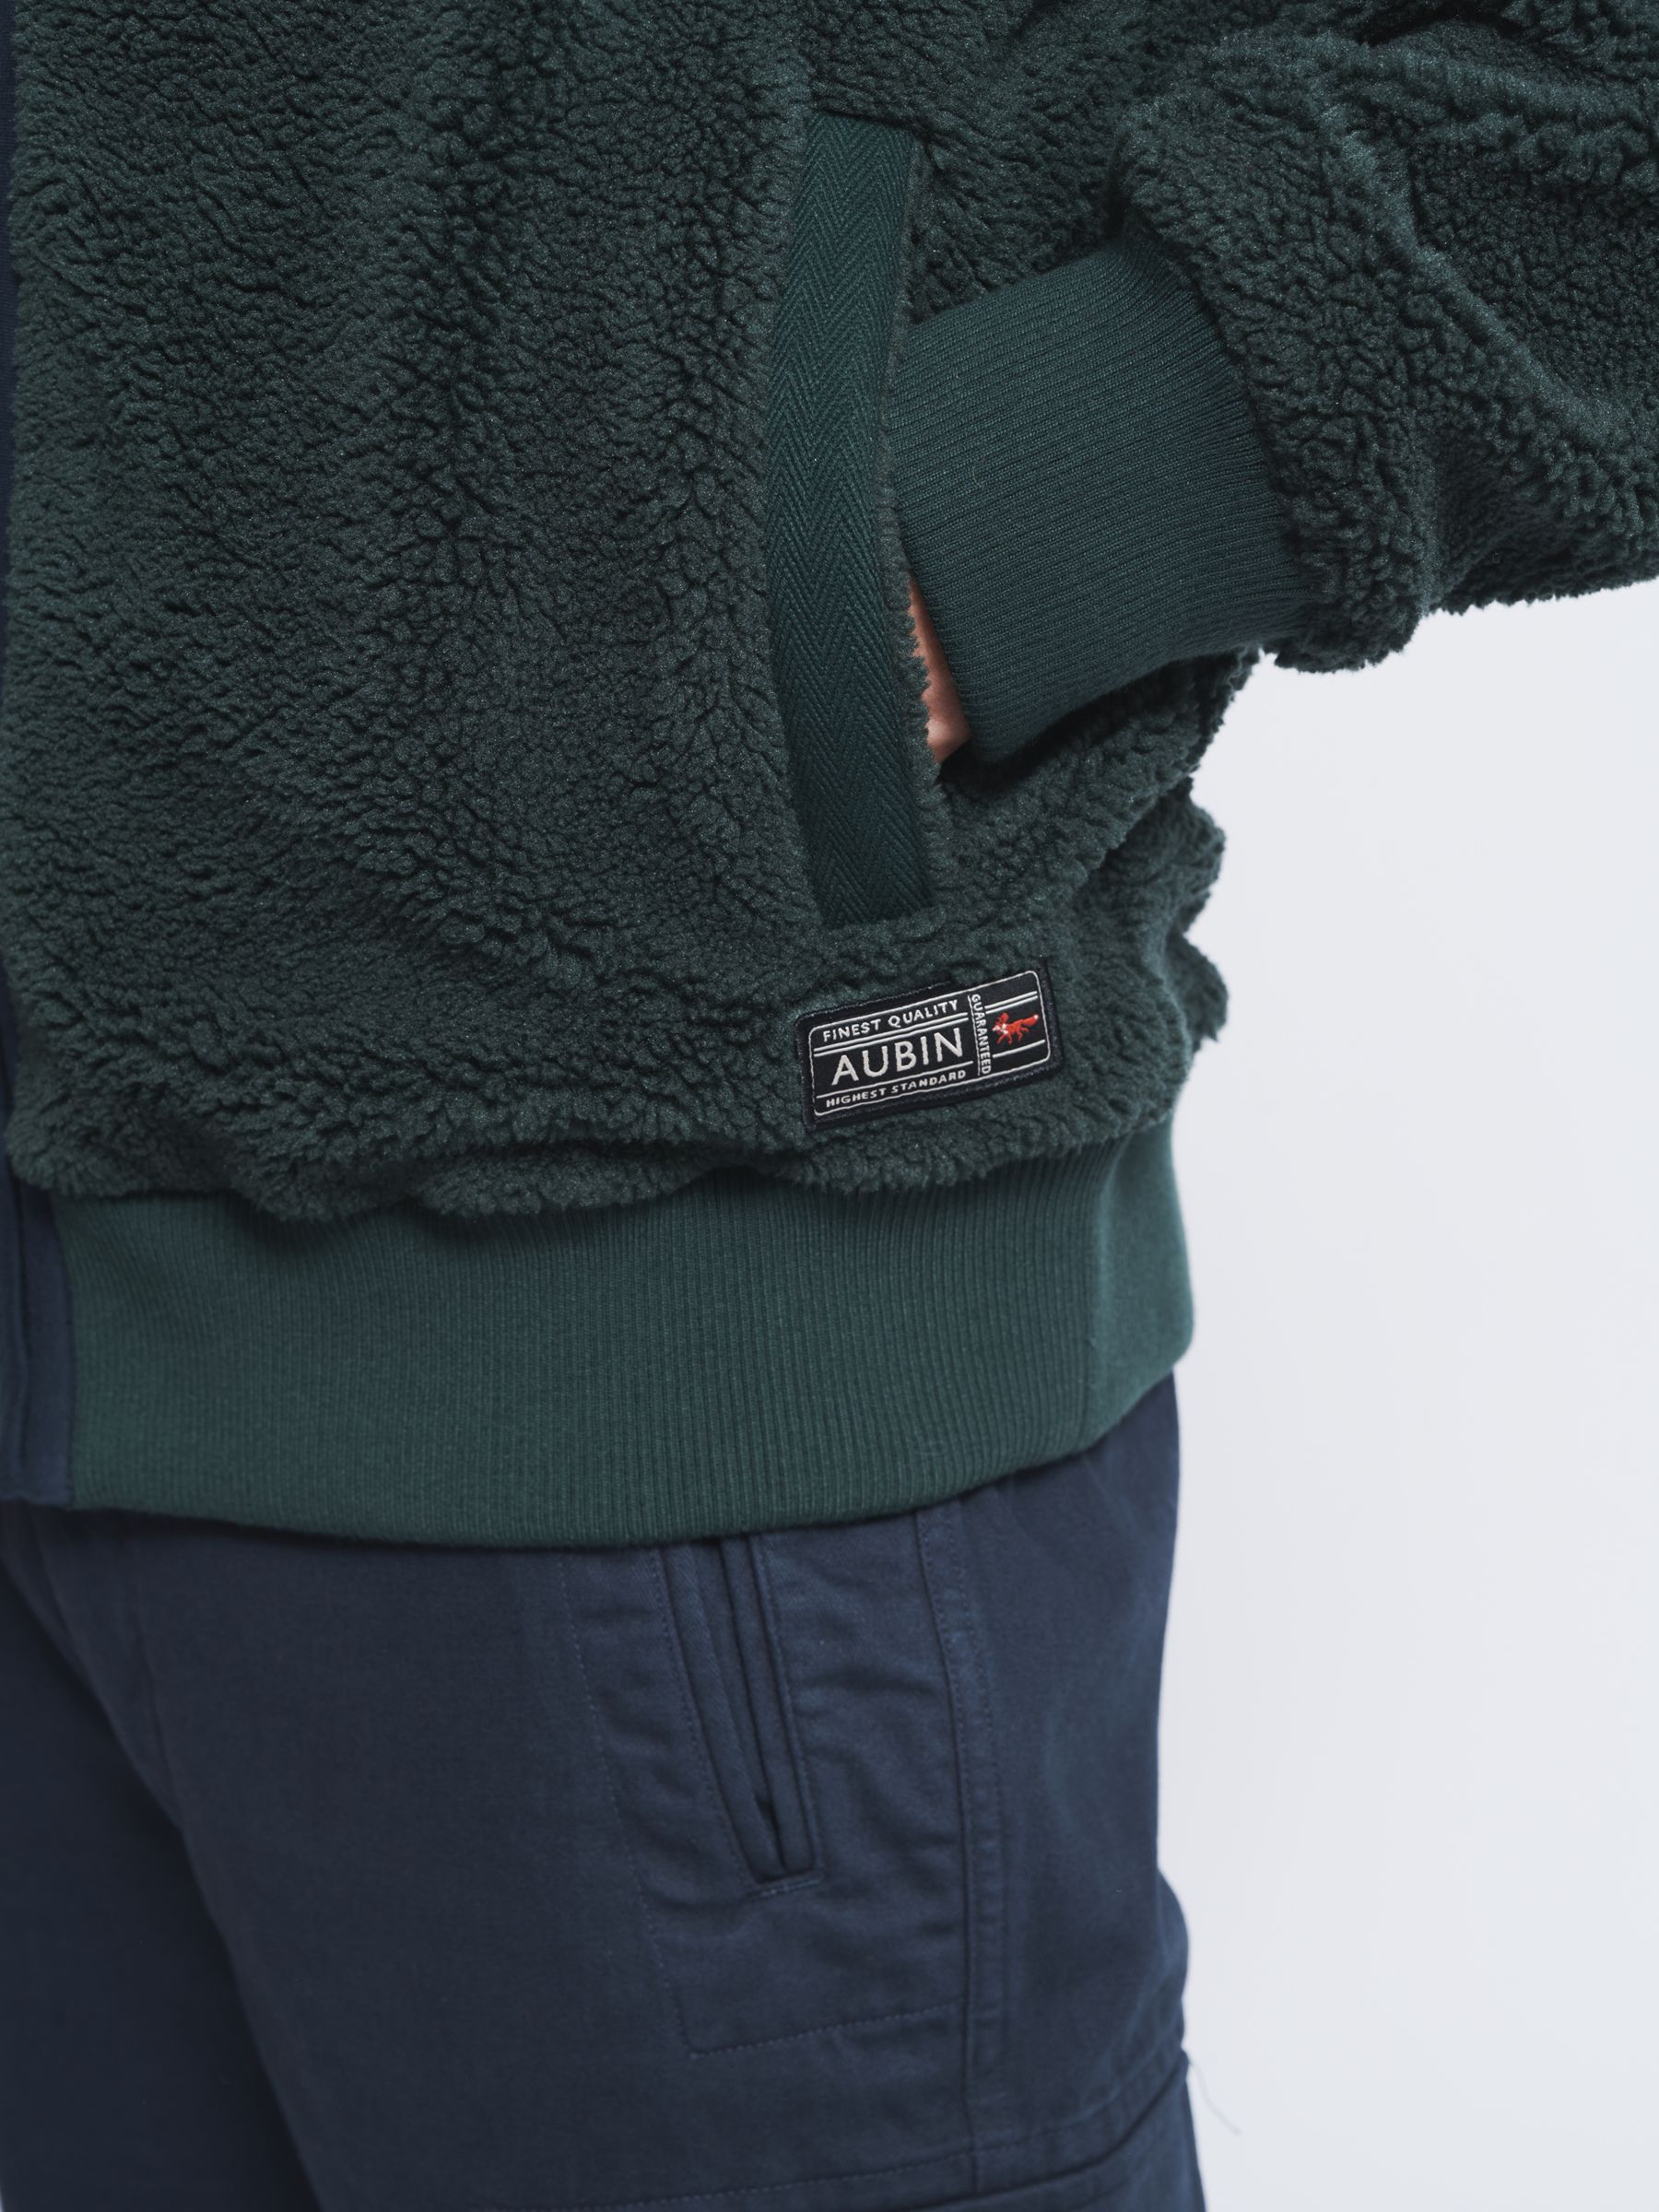 Aubin Keswick Borg Zip Thru Fleece Sweatshirt, Khaki, XXL